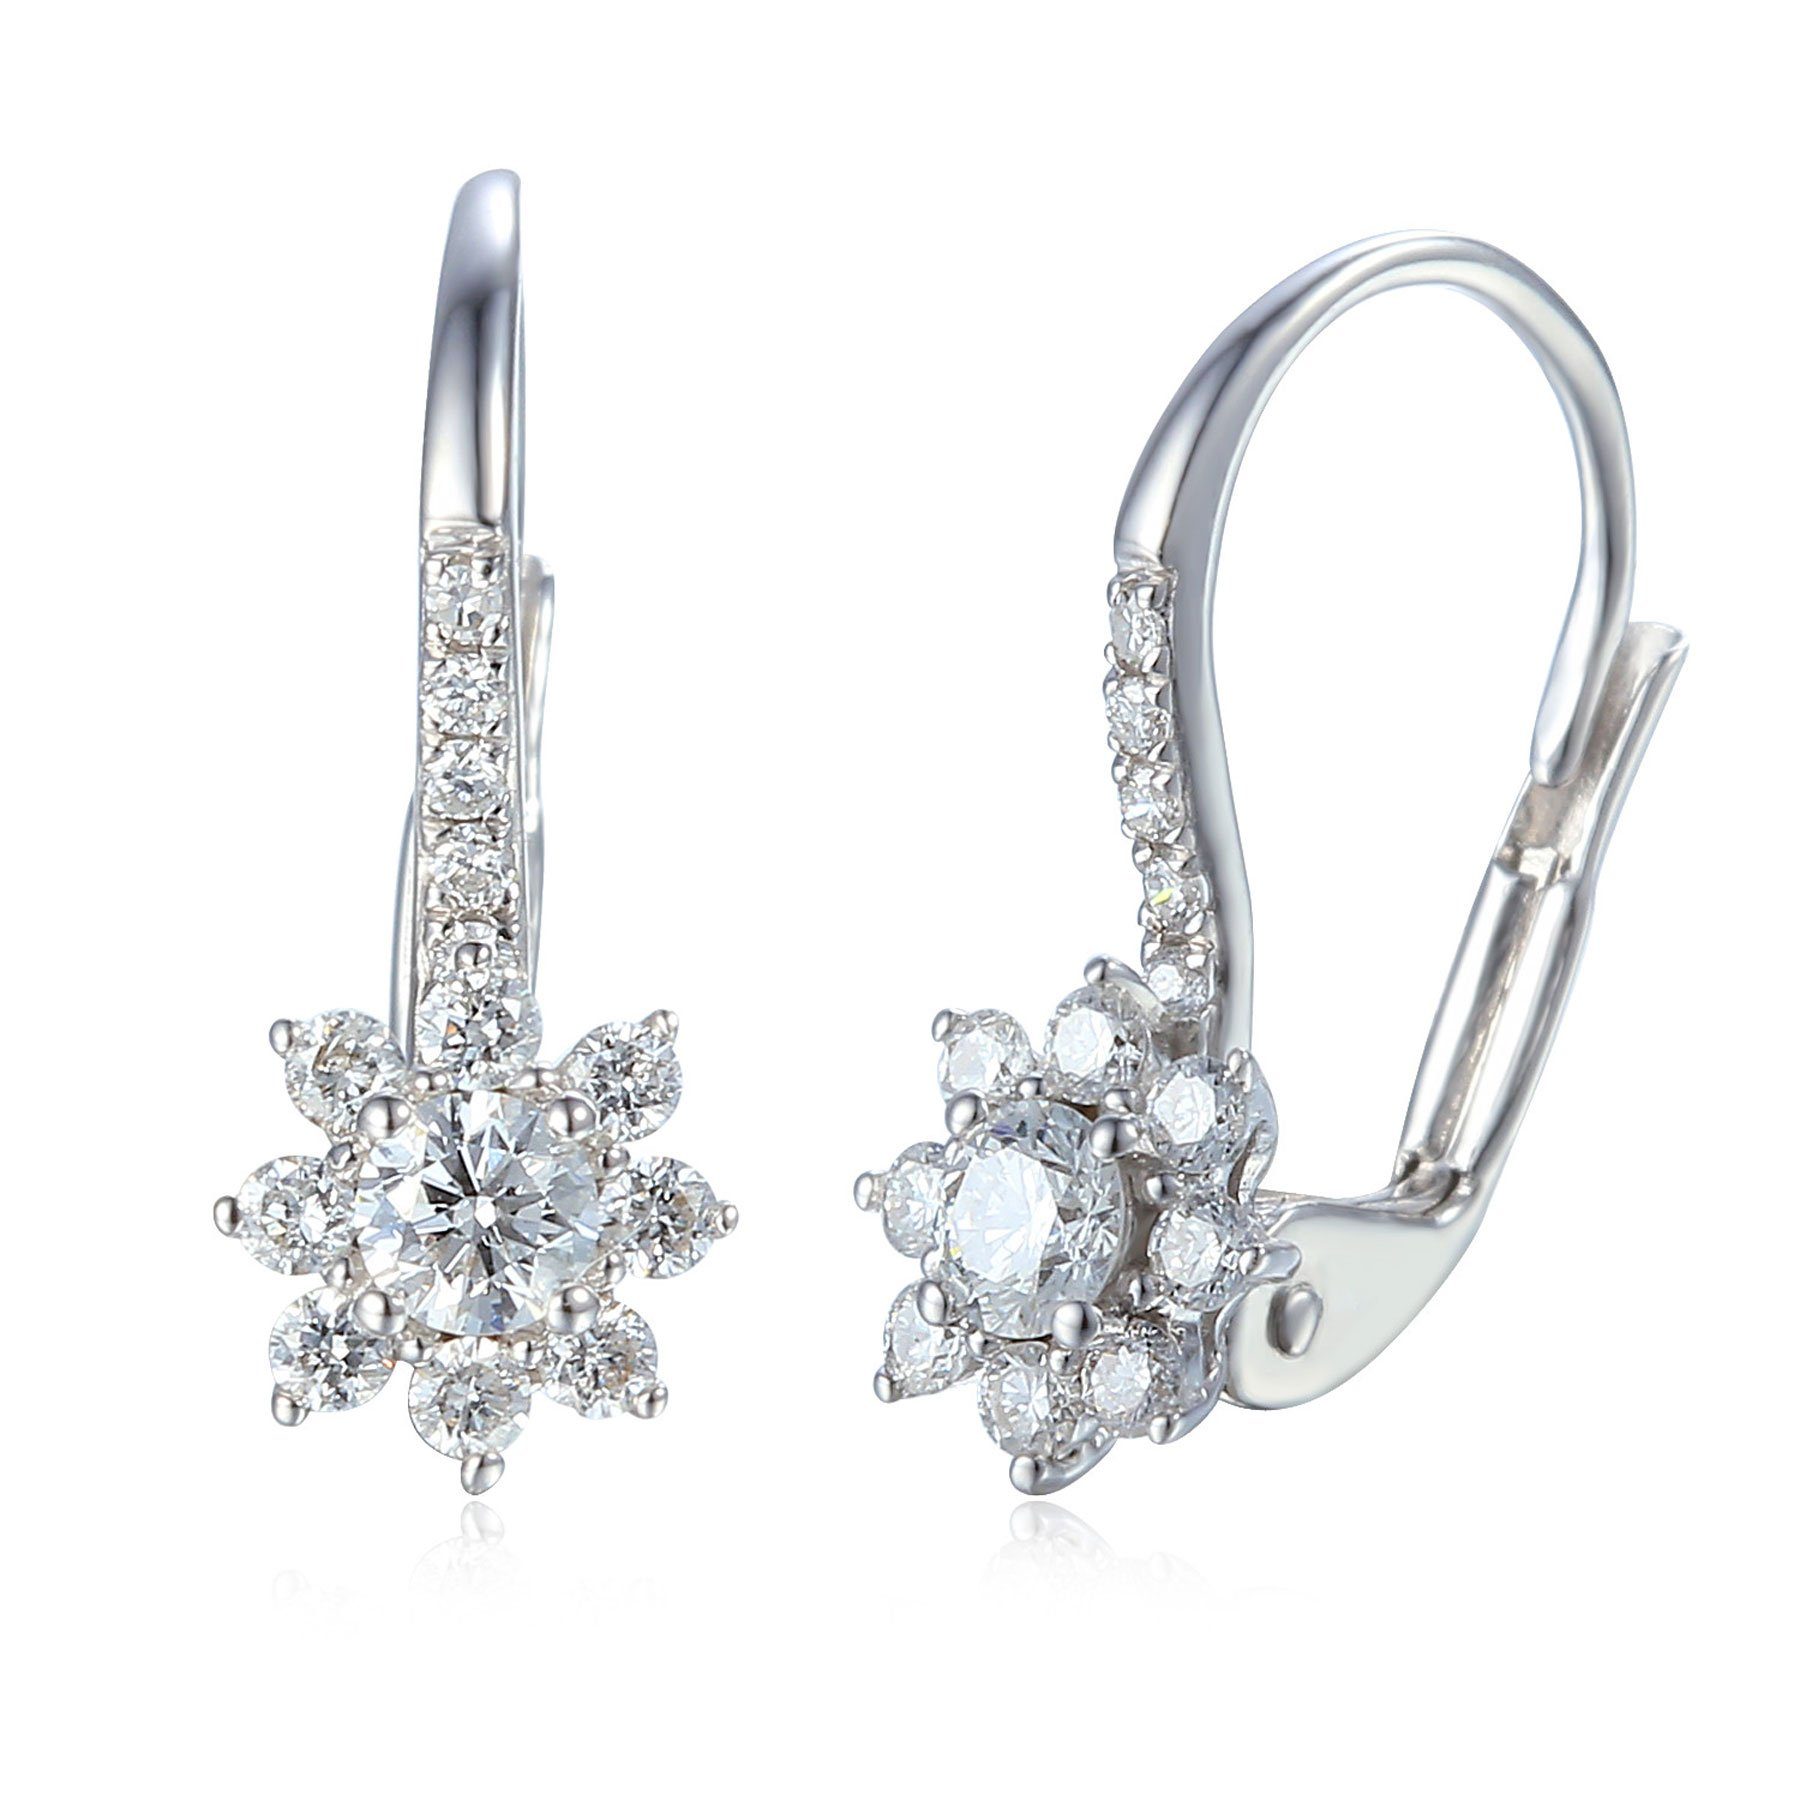 Damen Schmuck Stella-Jewellery Paar Ohrstecker 585er Weißgold Ohrringe mit Diamanten zus. 0,51ct (Ohrhänger), Diamanten Solitair